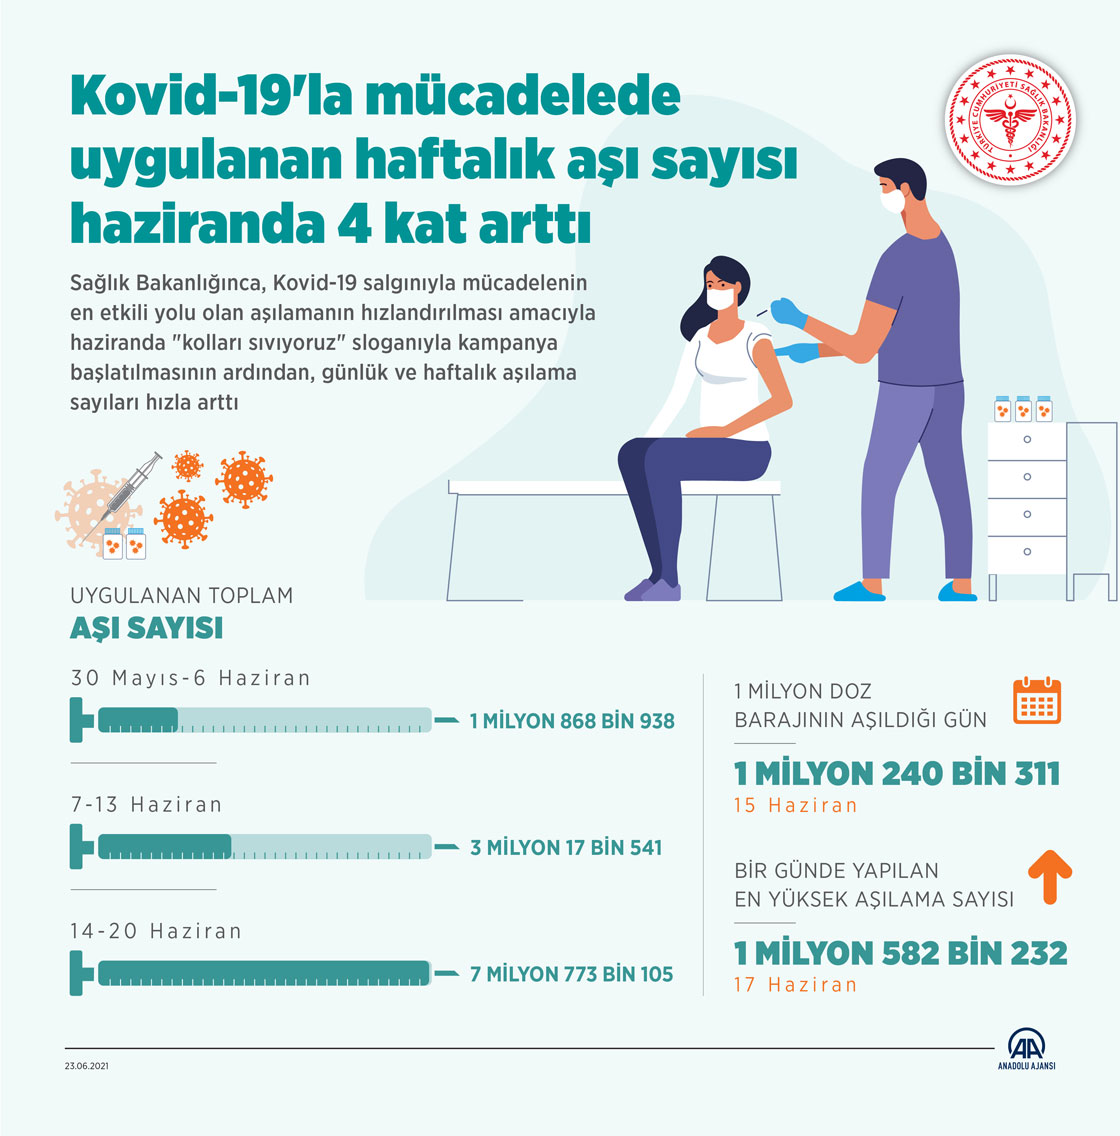 Kovid-19'la mücadelede uygulanan haftalık aşı sayısı haziranda 4 kat arttı